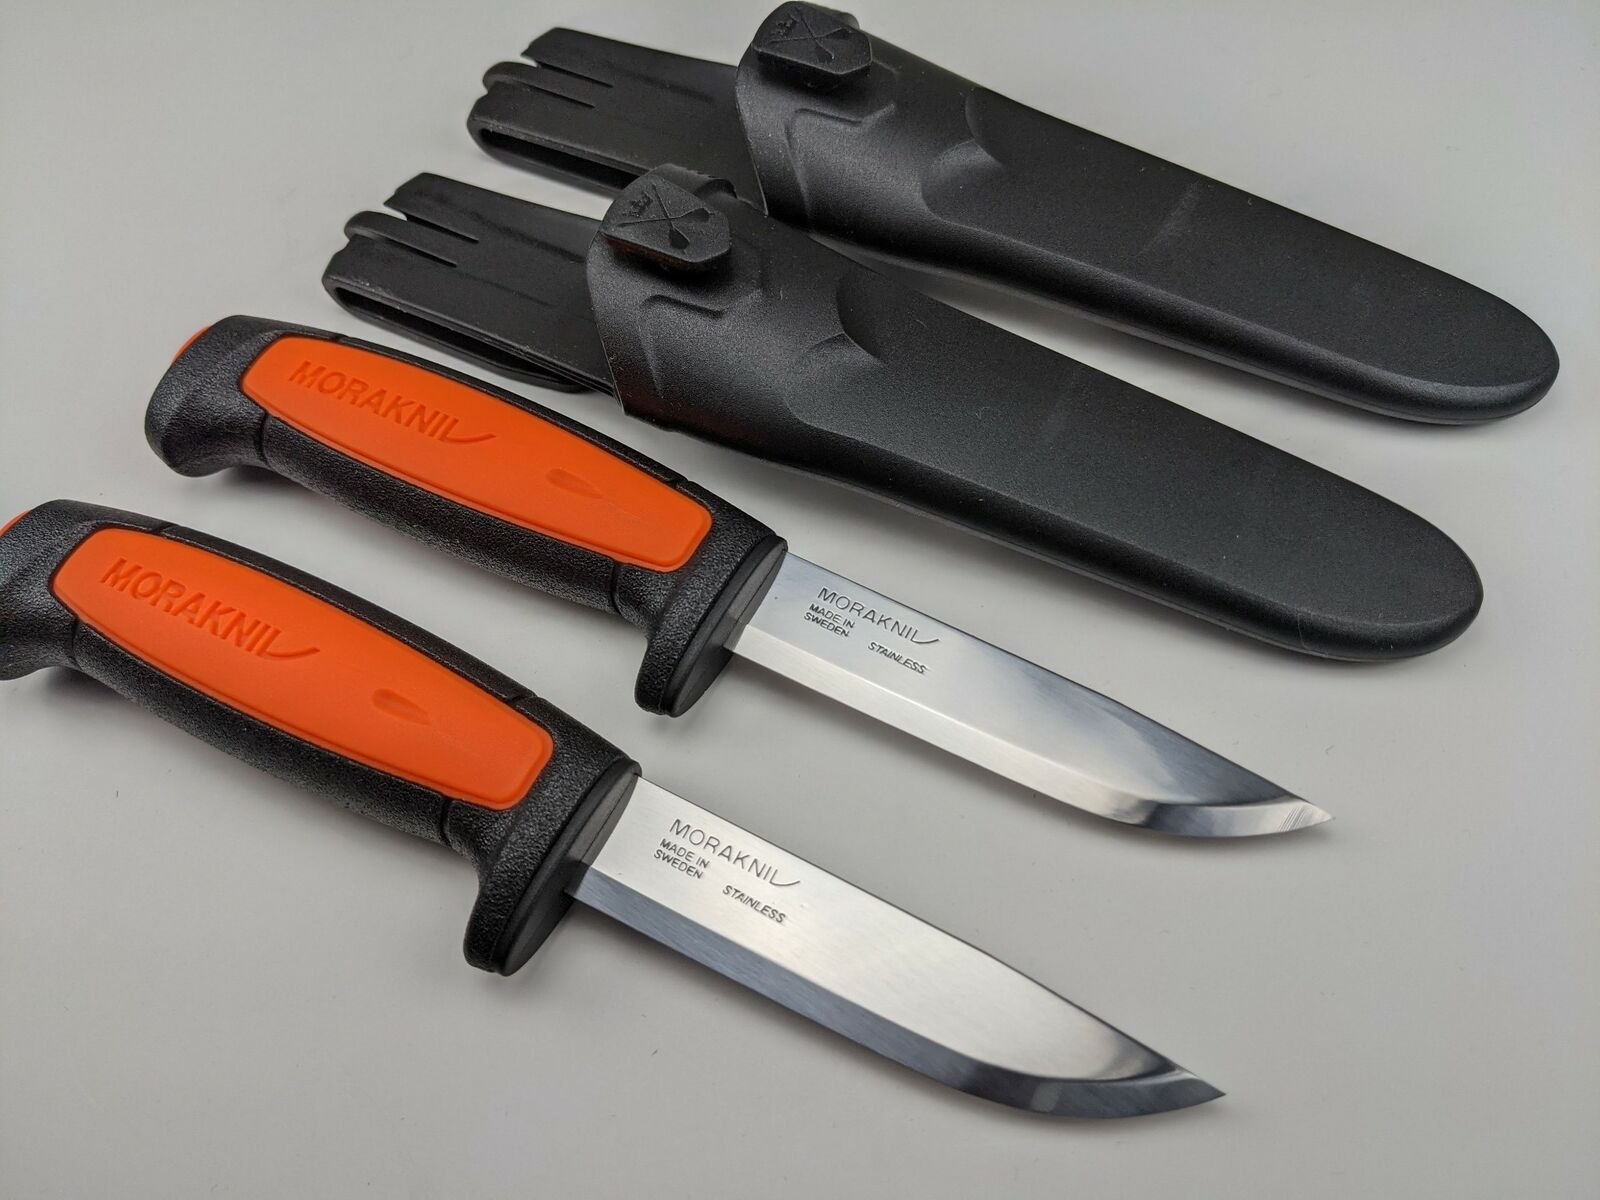 2 Pack Lot - Morakniv Basic 546 Knife & Sheath 2 Orange/Black Handle Mora Knives Morakniv